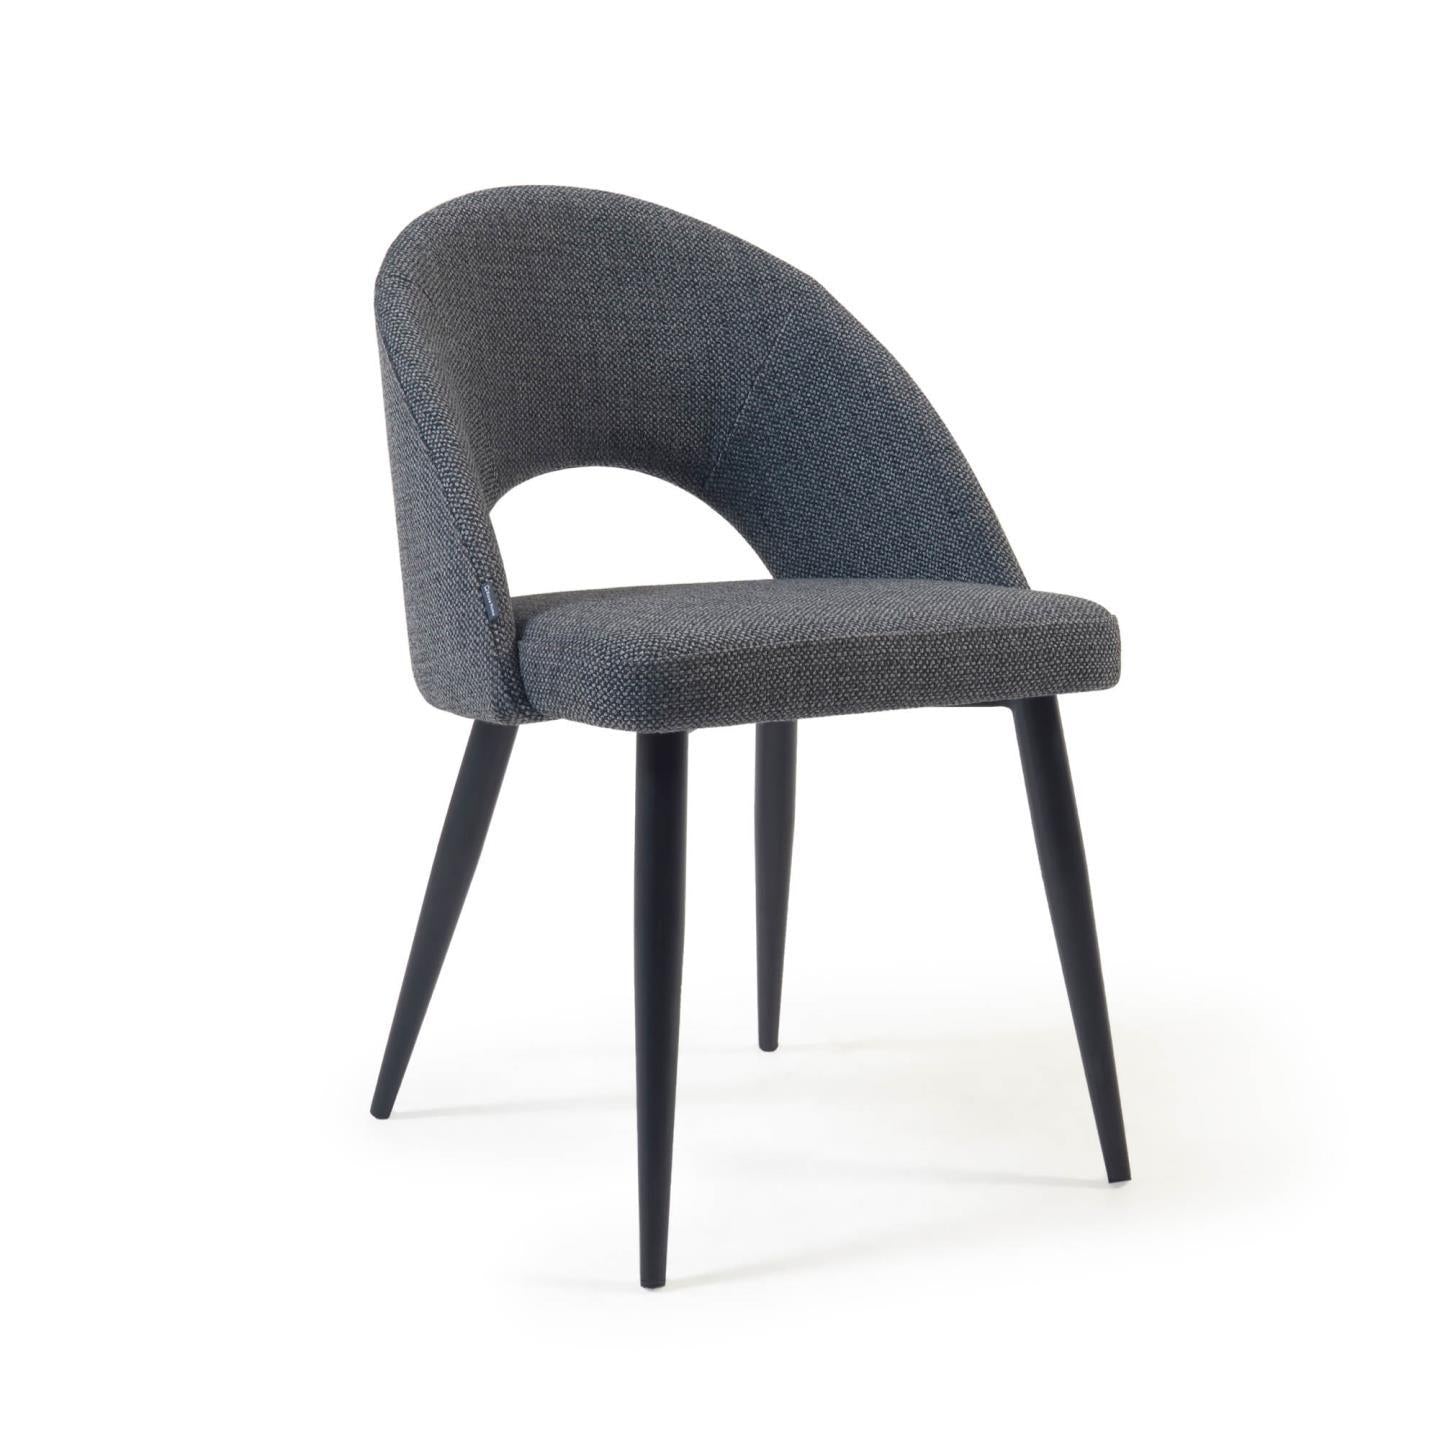 Chair W/ Black Steel Legs